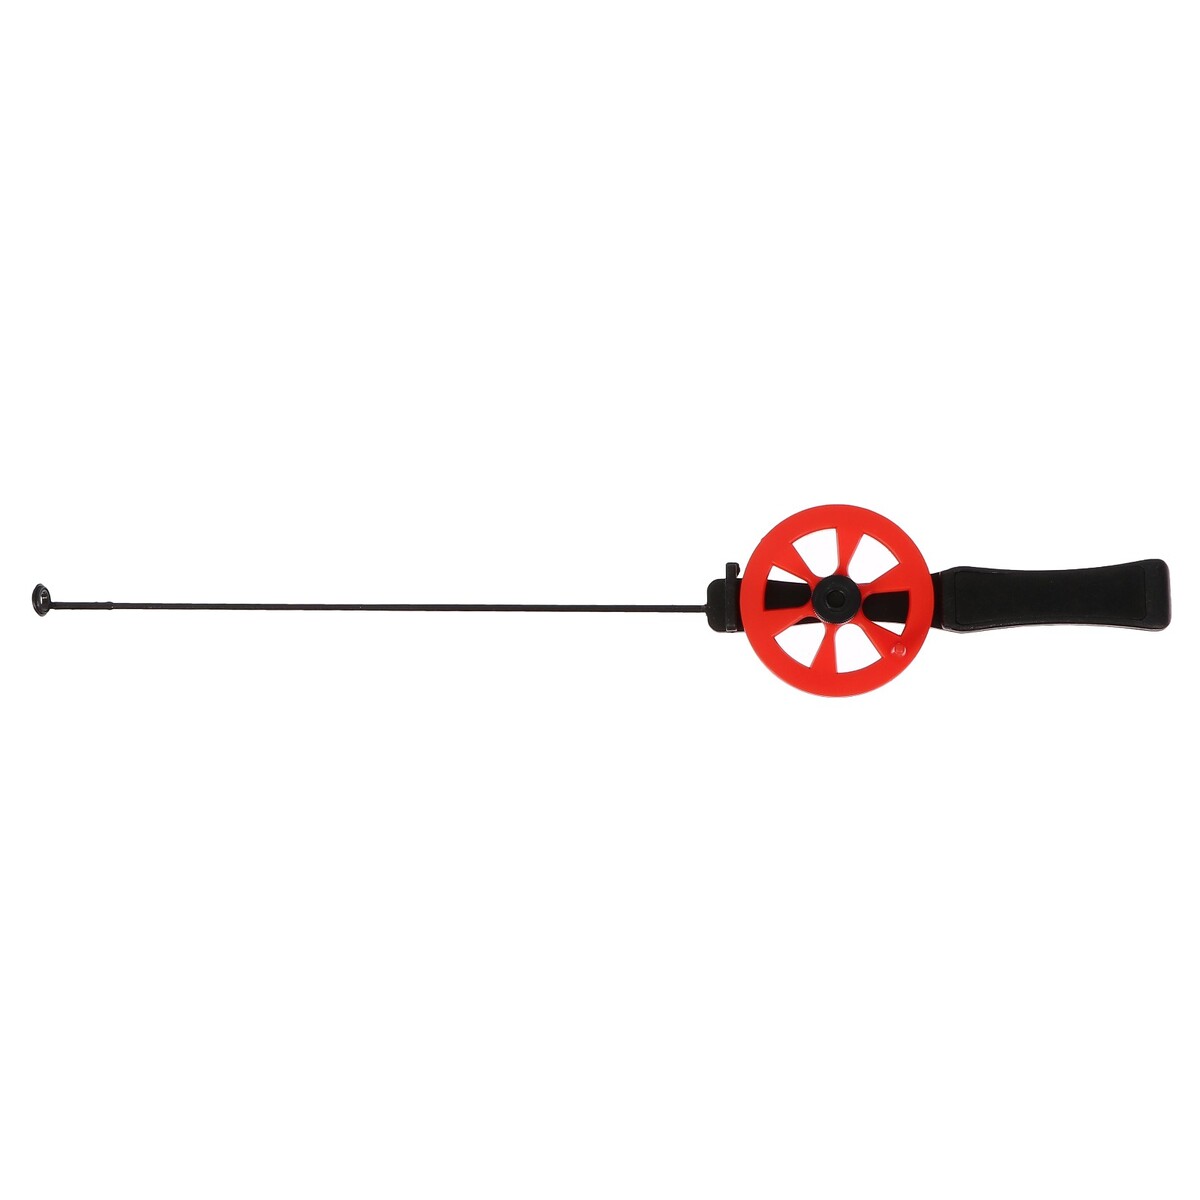 Удочка зимняя, ручка пластик, направляющая лески, красная, hfb-15 удочка зимняя ручка неопрен длина 42 см красный hbf 34 1